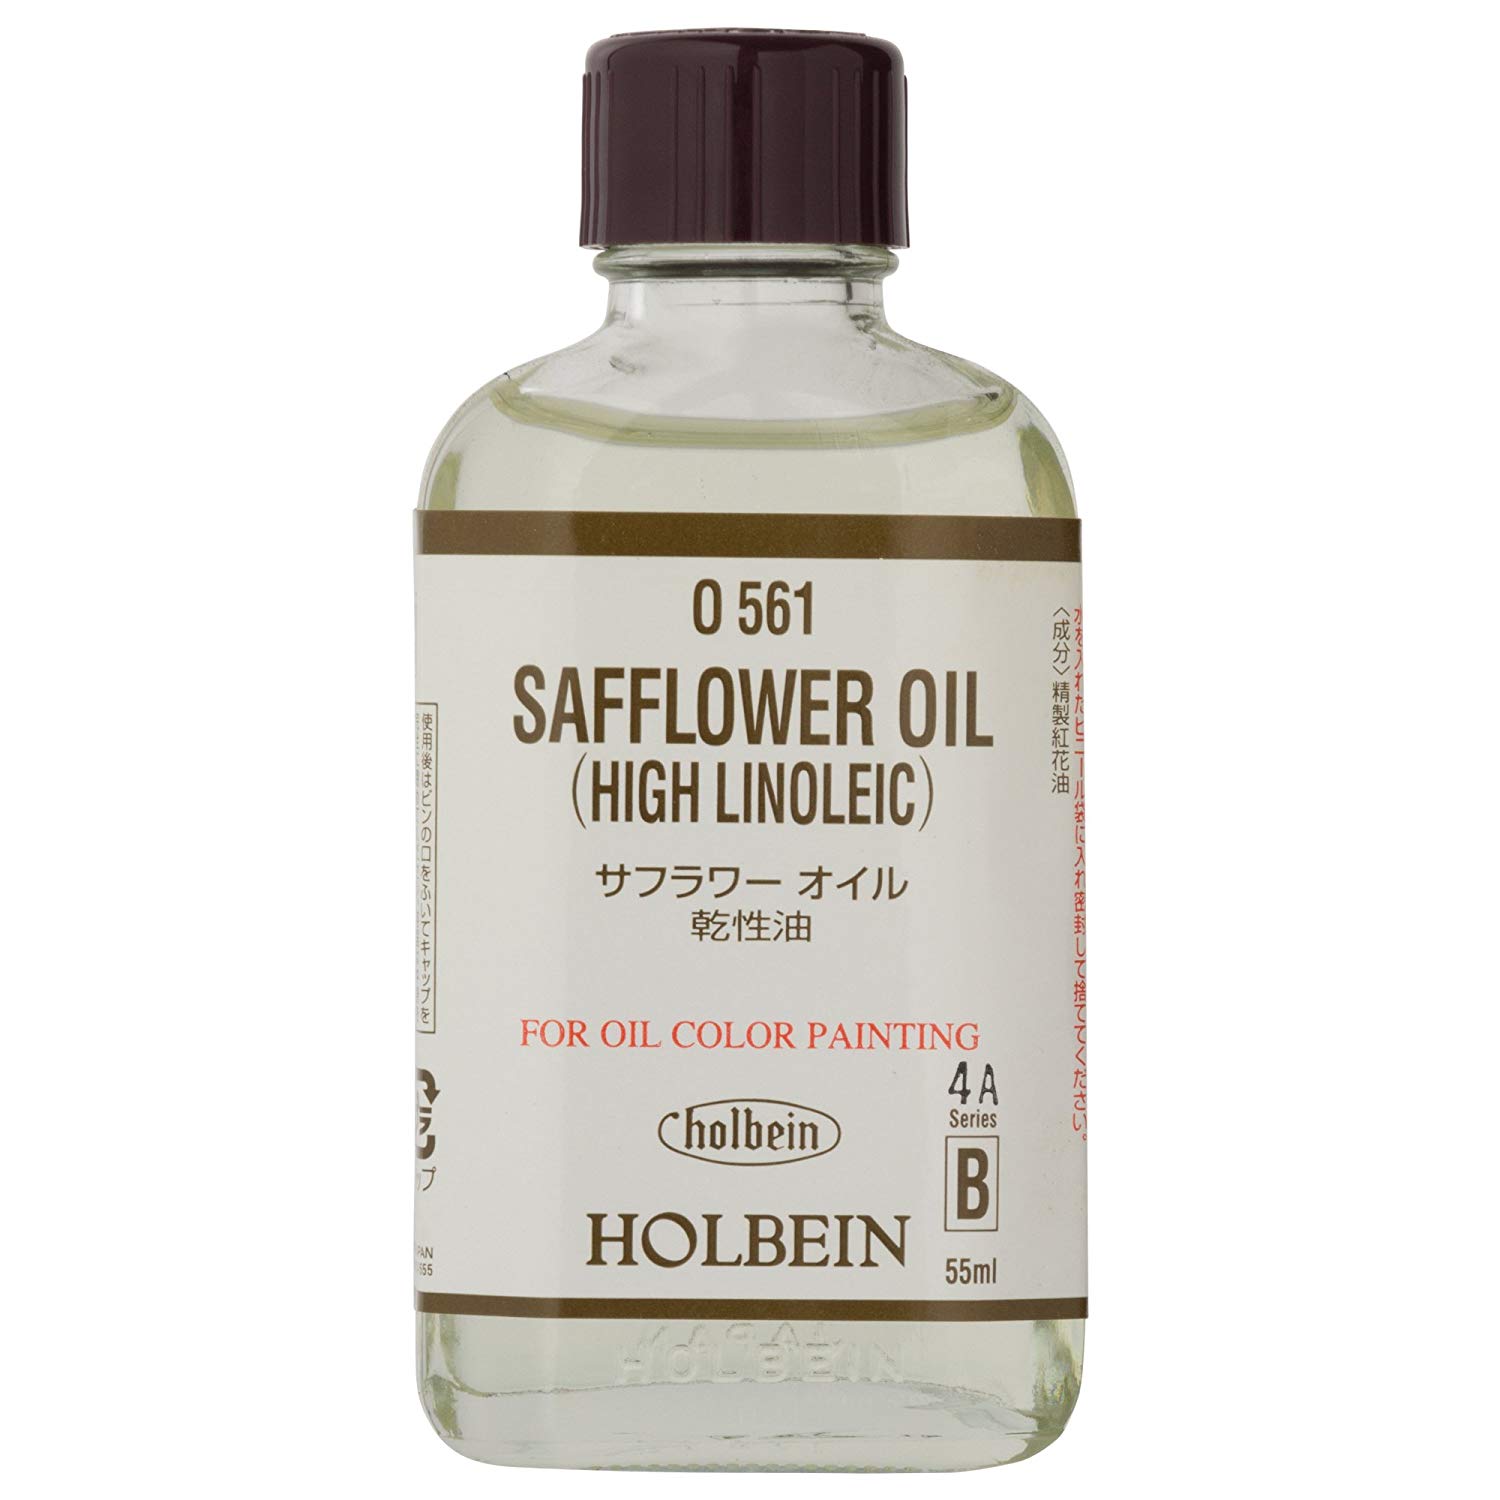 Holbein Safflower Oil